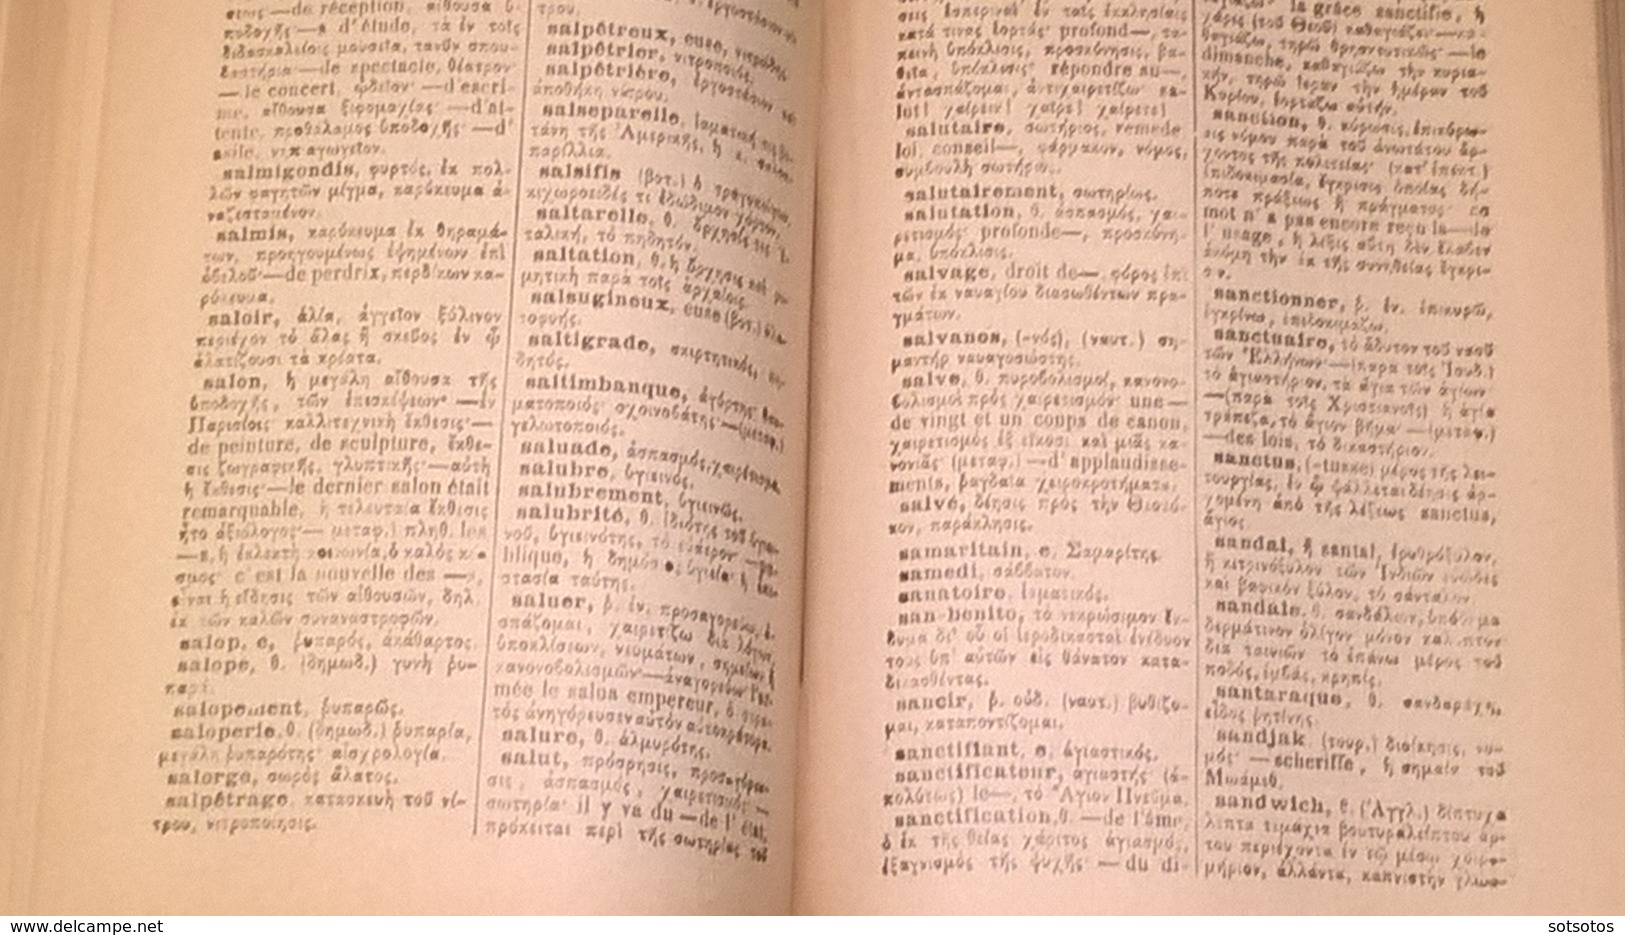 FRANCAIS-GREC Dictionaire par N. KONTOPOULOS Ed: NEOS KOSMOS (1934) 1076 pages, EN TRES BONNE ETAT  (13,50Χ17,50 cent.)